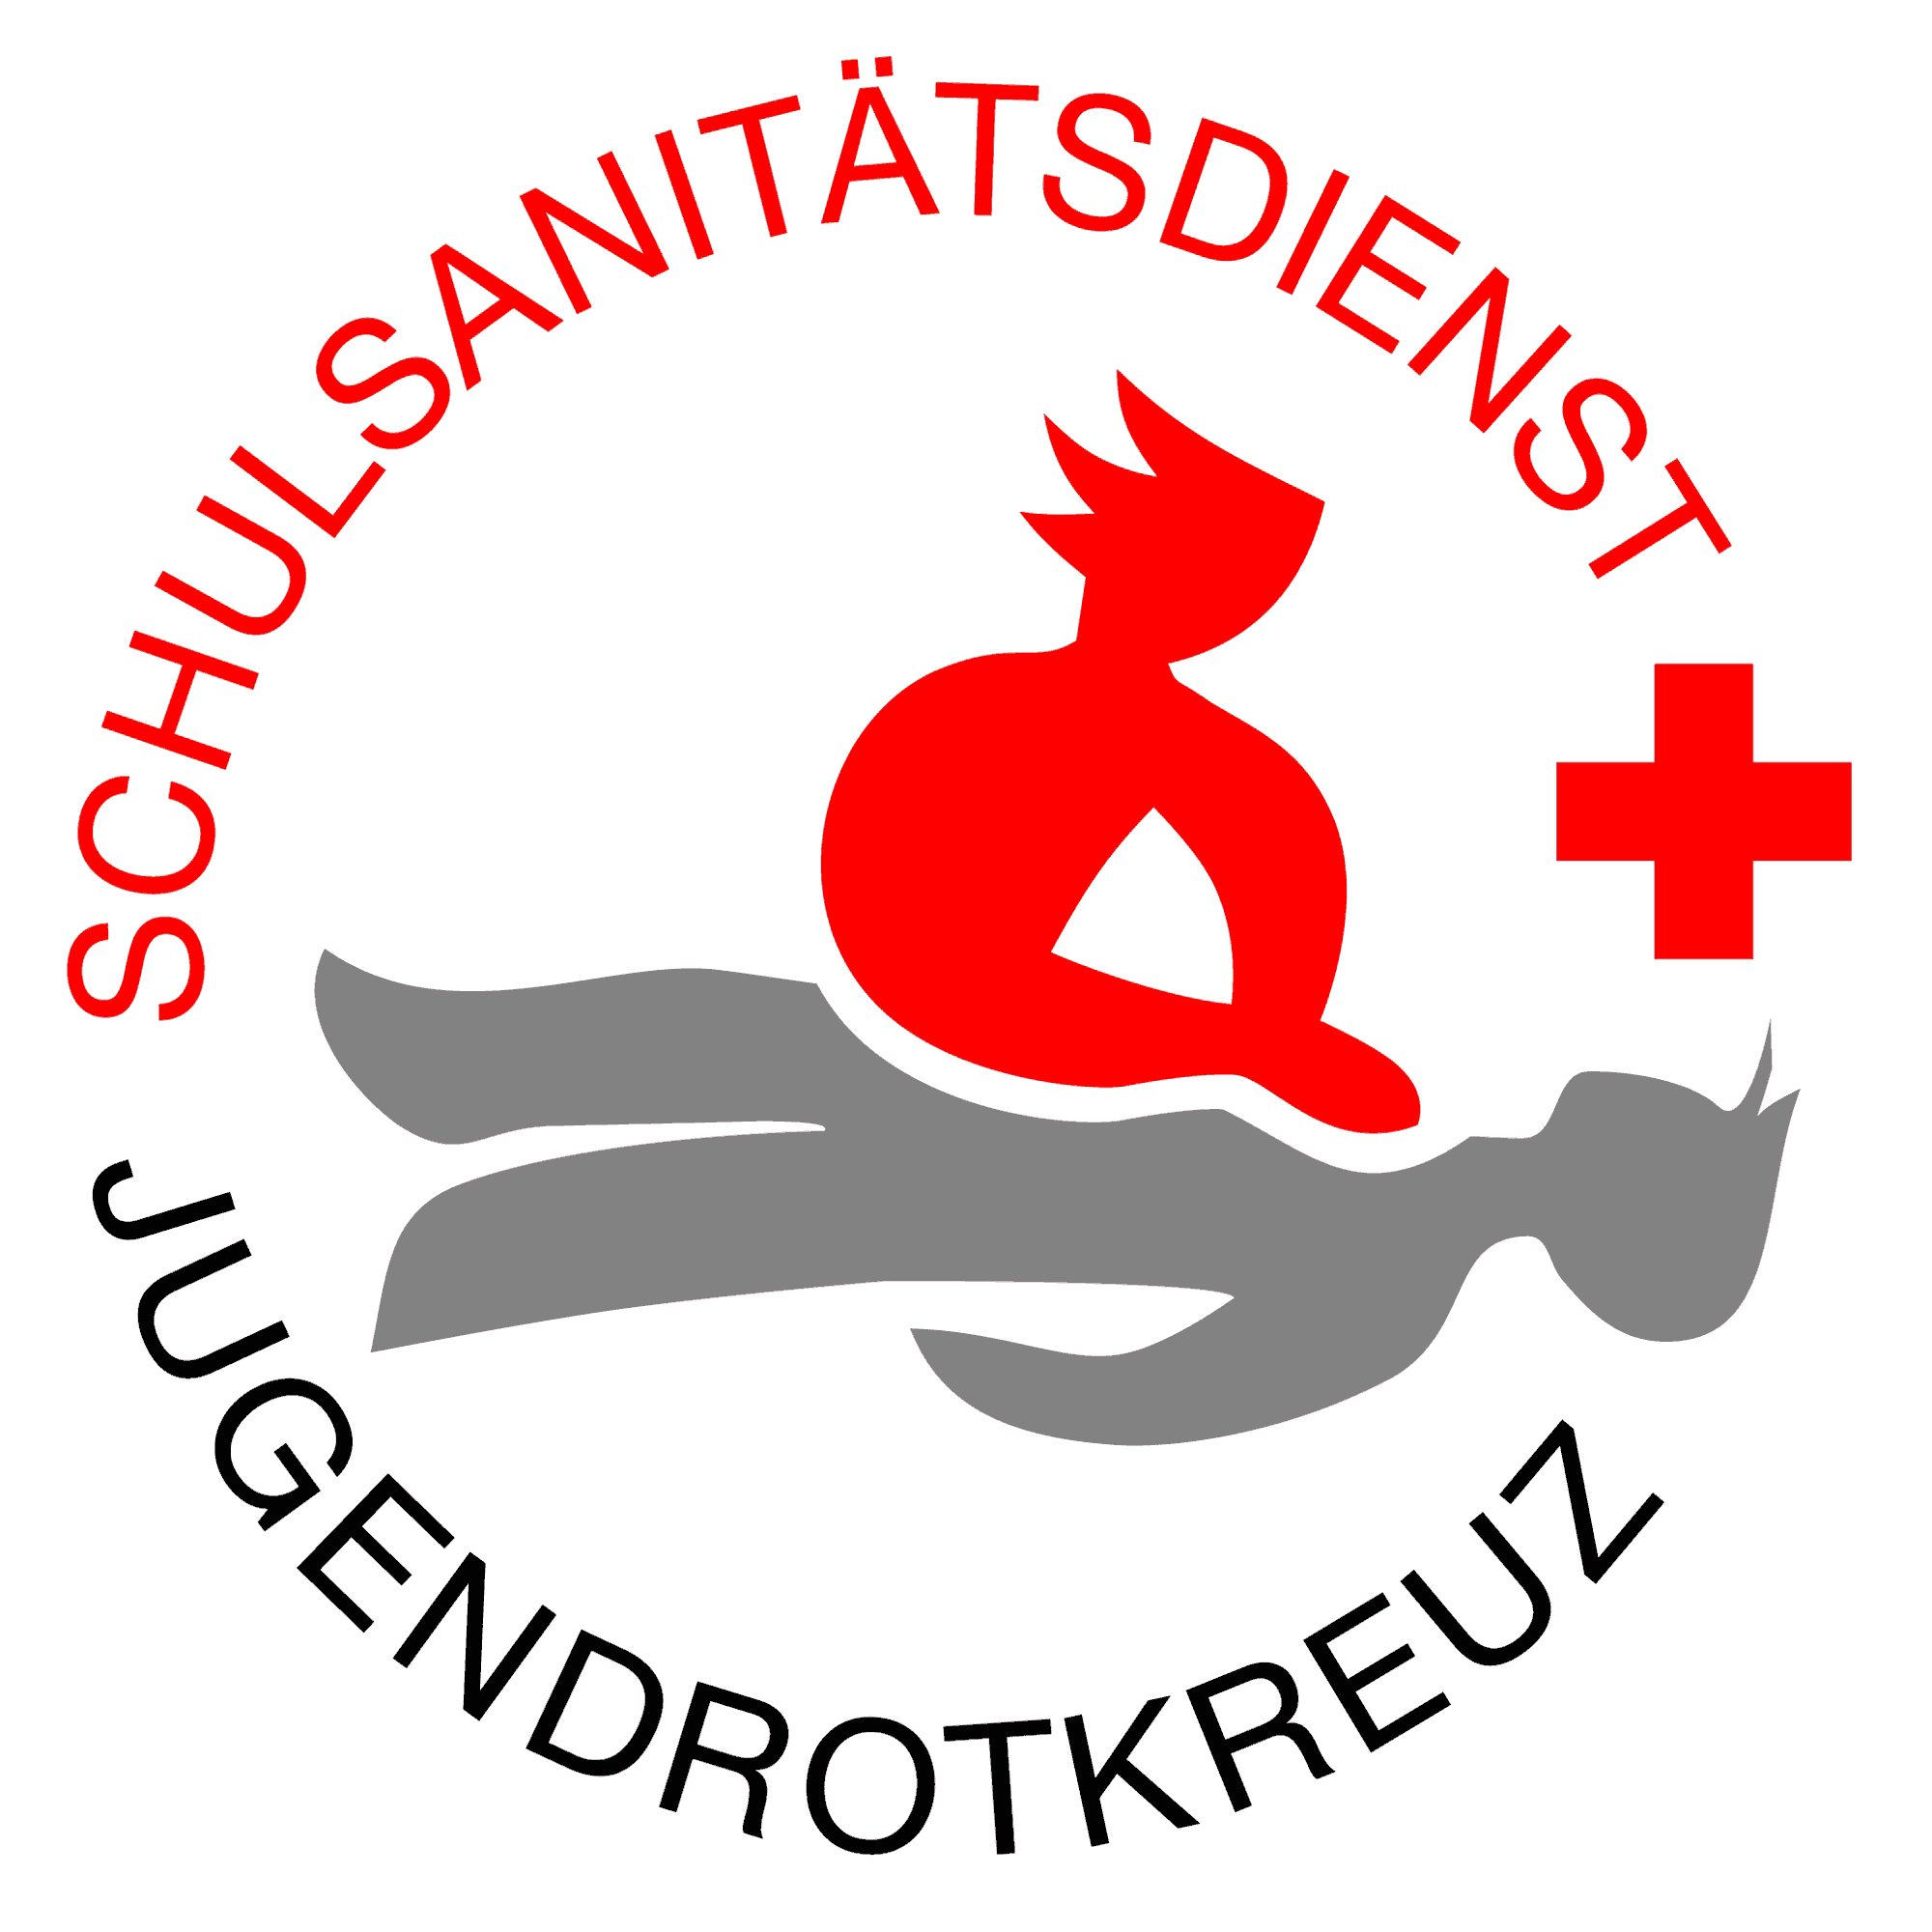 Bild: Zu sehen ist das Logo des Schulsanitätsdienstes